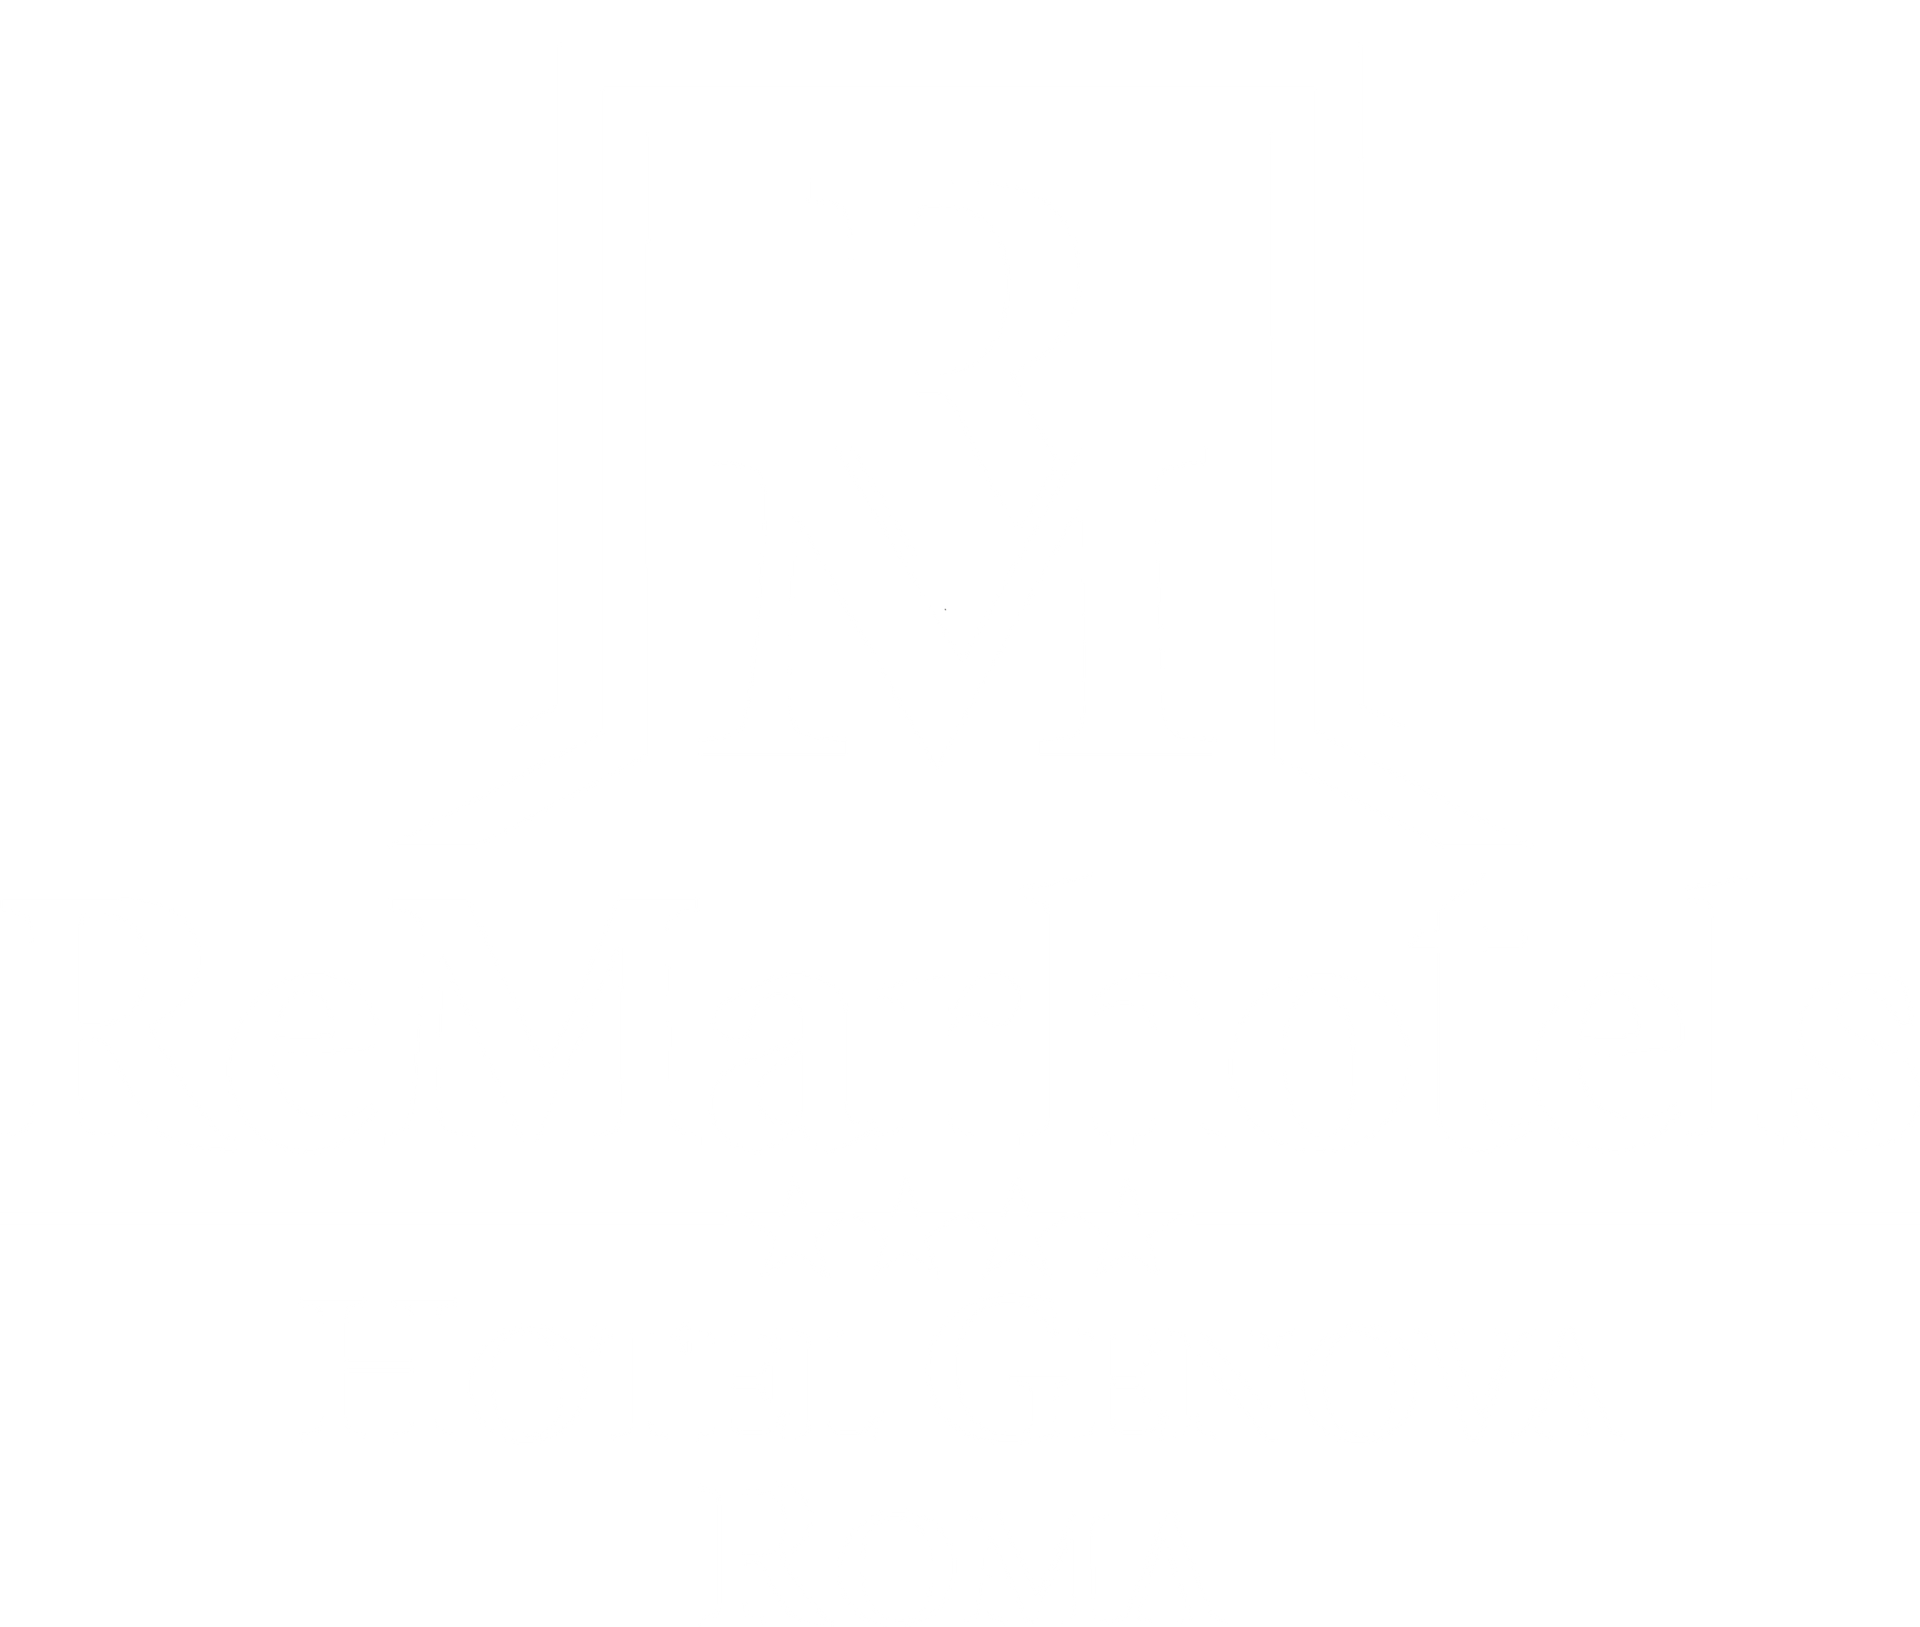 Hotel Genova - LOGO